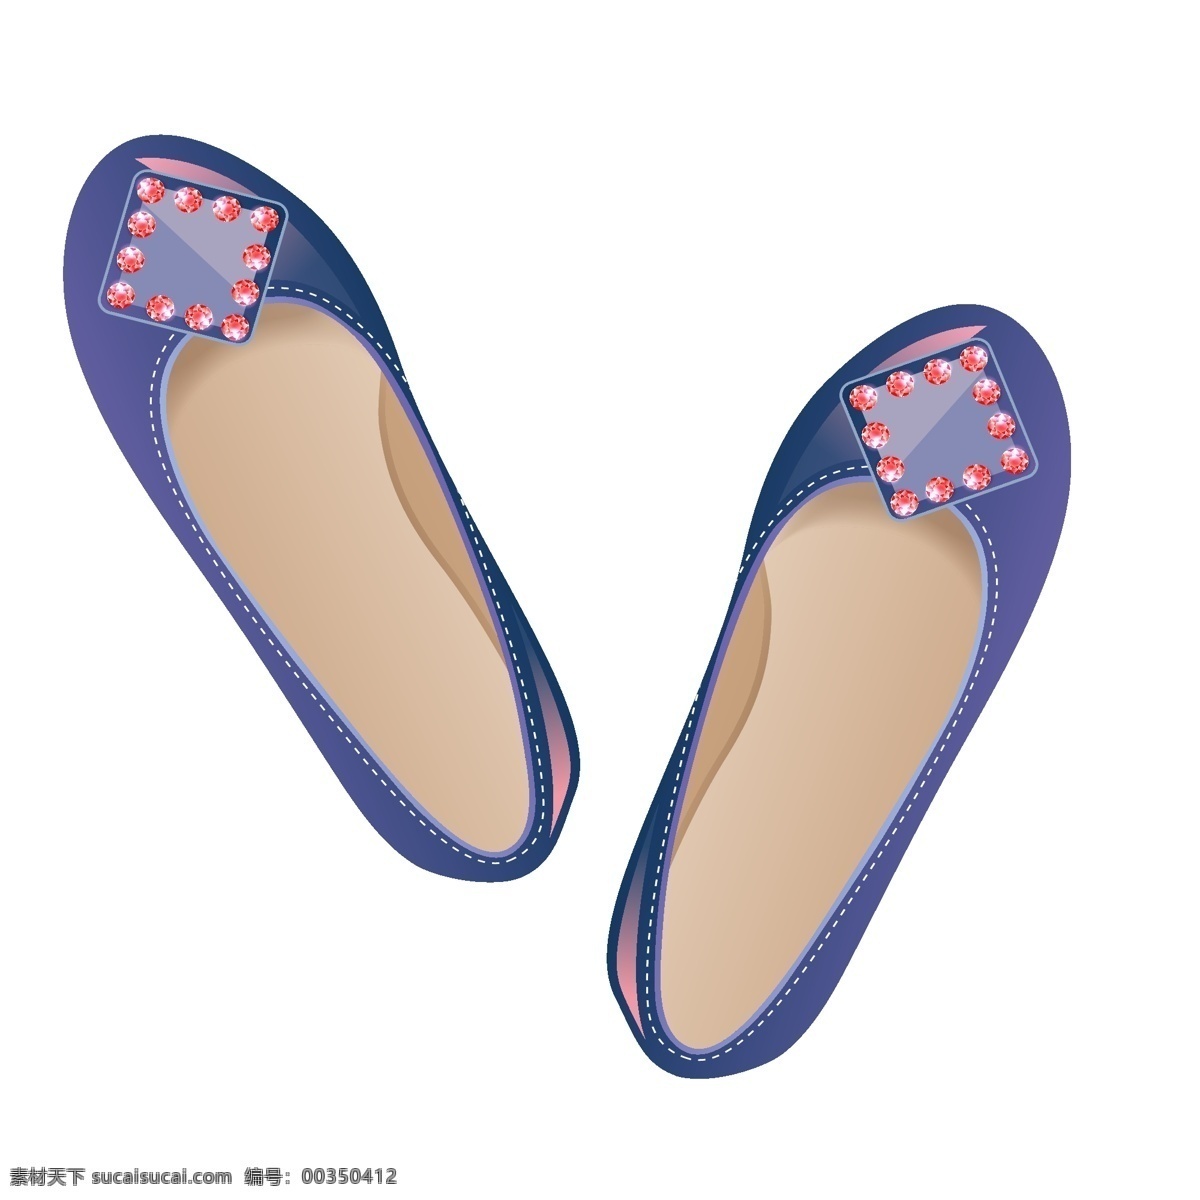 蓝色 夏日 平底鞋 鞋子 凉鞋